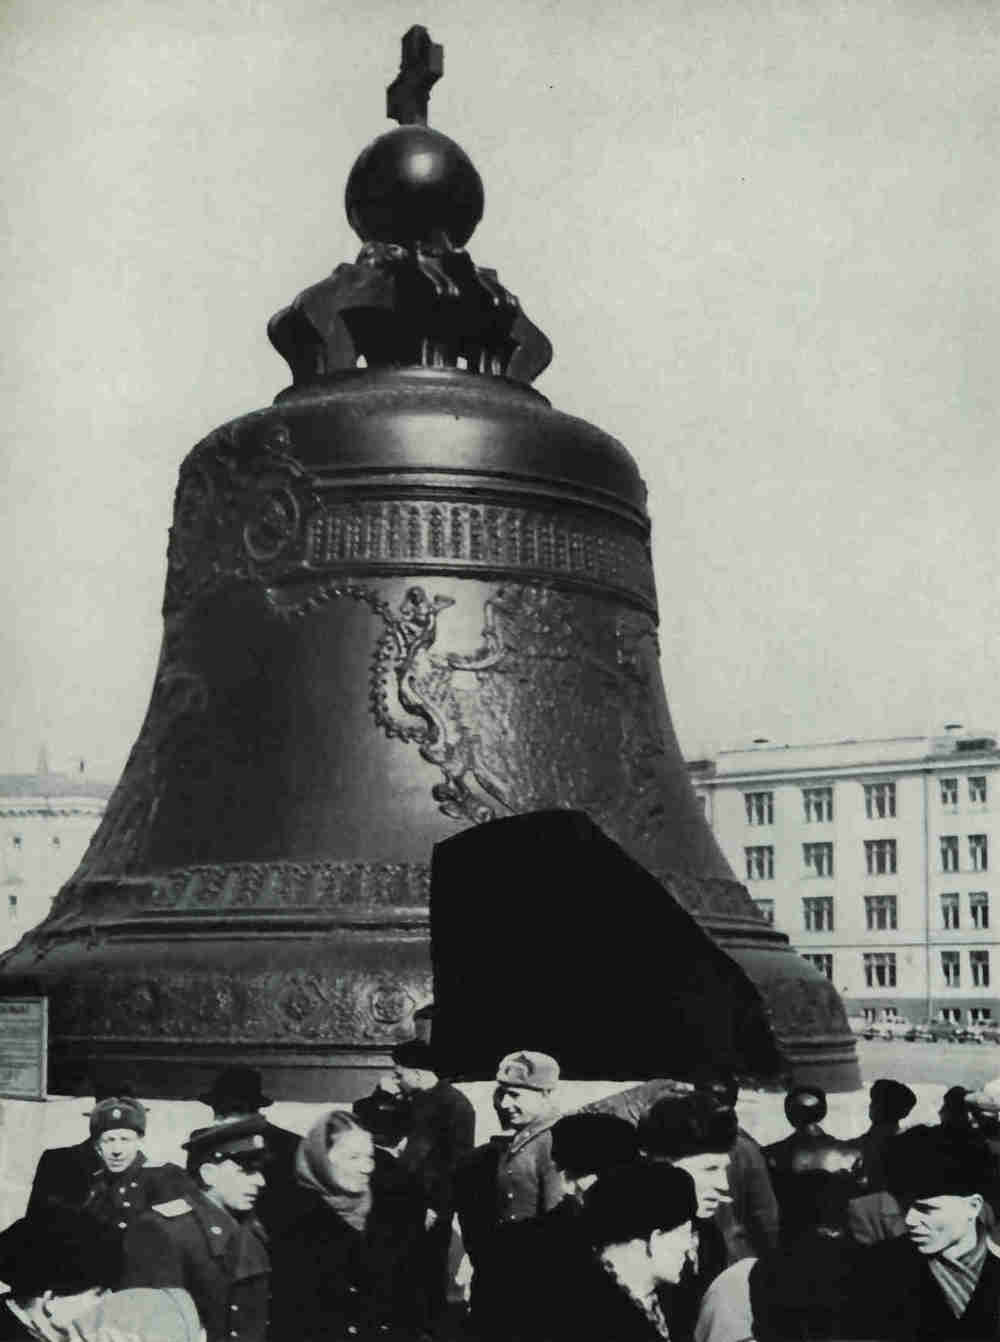 Никогда не висел, никогда не звонил — самый большой колокол в мире установлен на постаменте в Московском Кремле. Колокол весом 200 тонн, отлитый в 1735 году, носит название Царь-колокол (Tsar Kolokol)